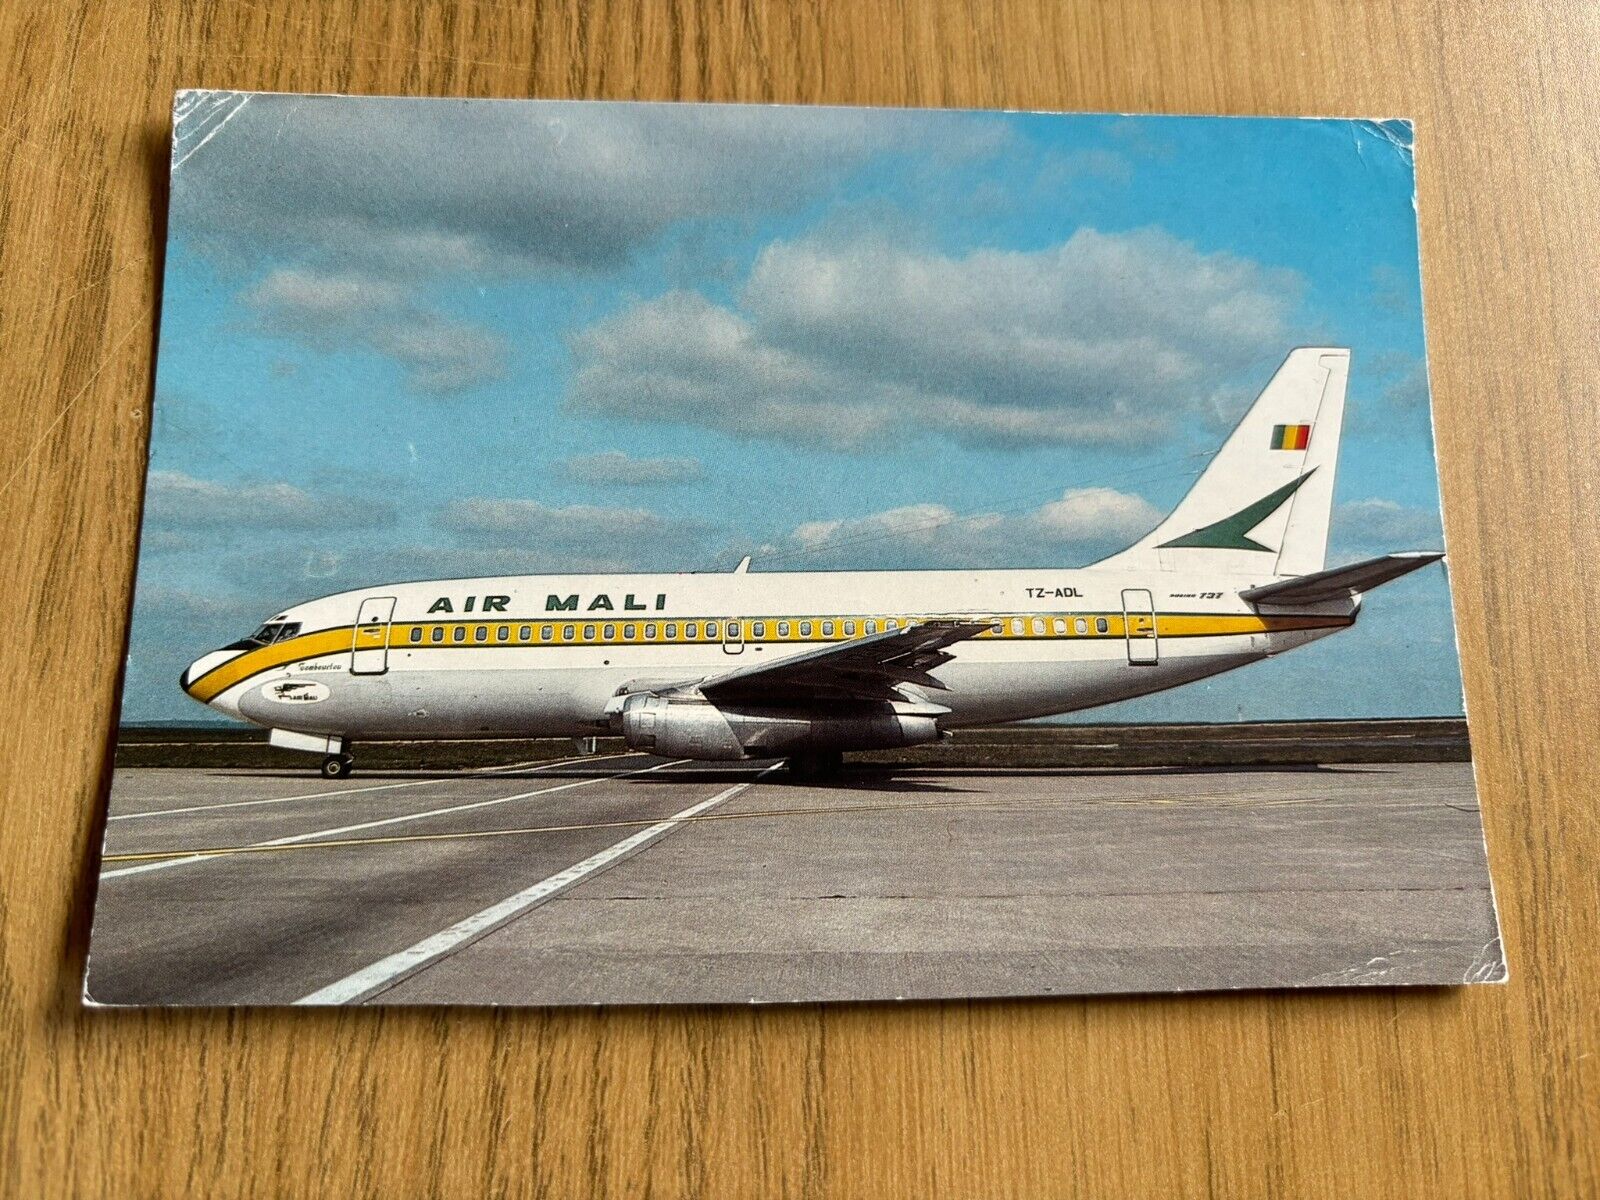 Air Mali Boeing 737-200 aircraft postcard